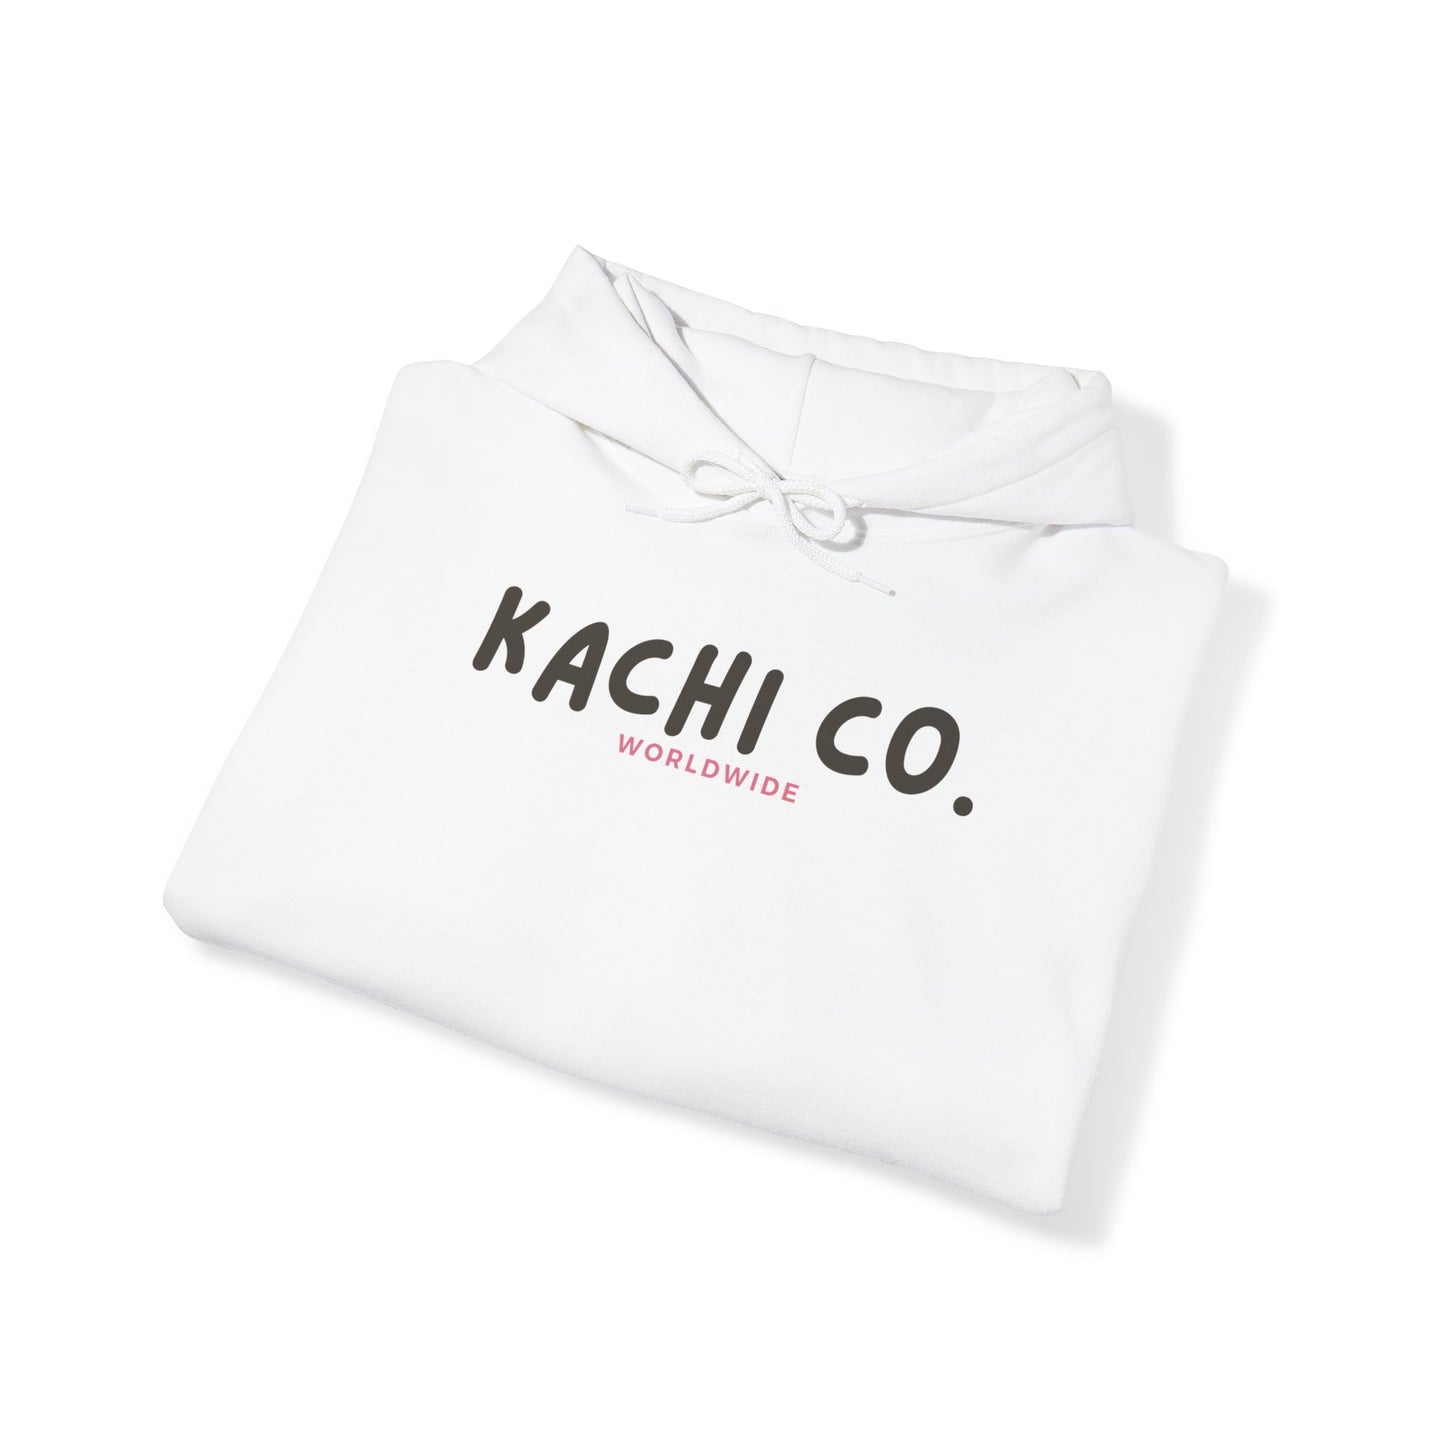 Kachi Co Logo Heavy Blend™ Hooded Sweatshirt